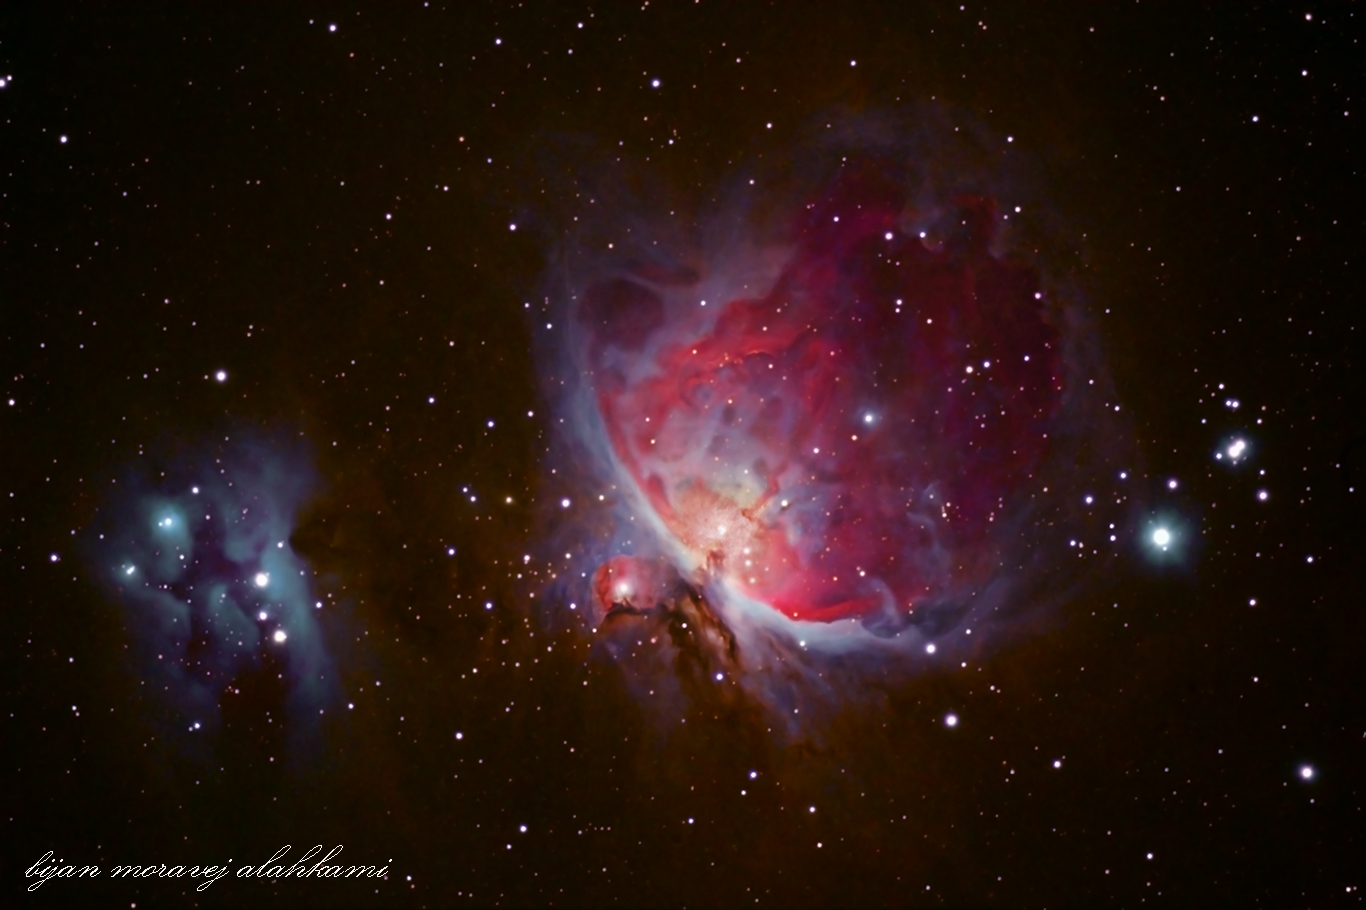 Orion Nebula m42 &running man nebula